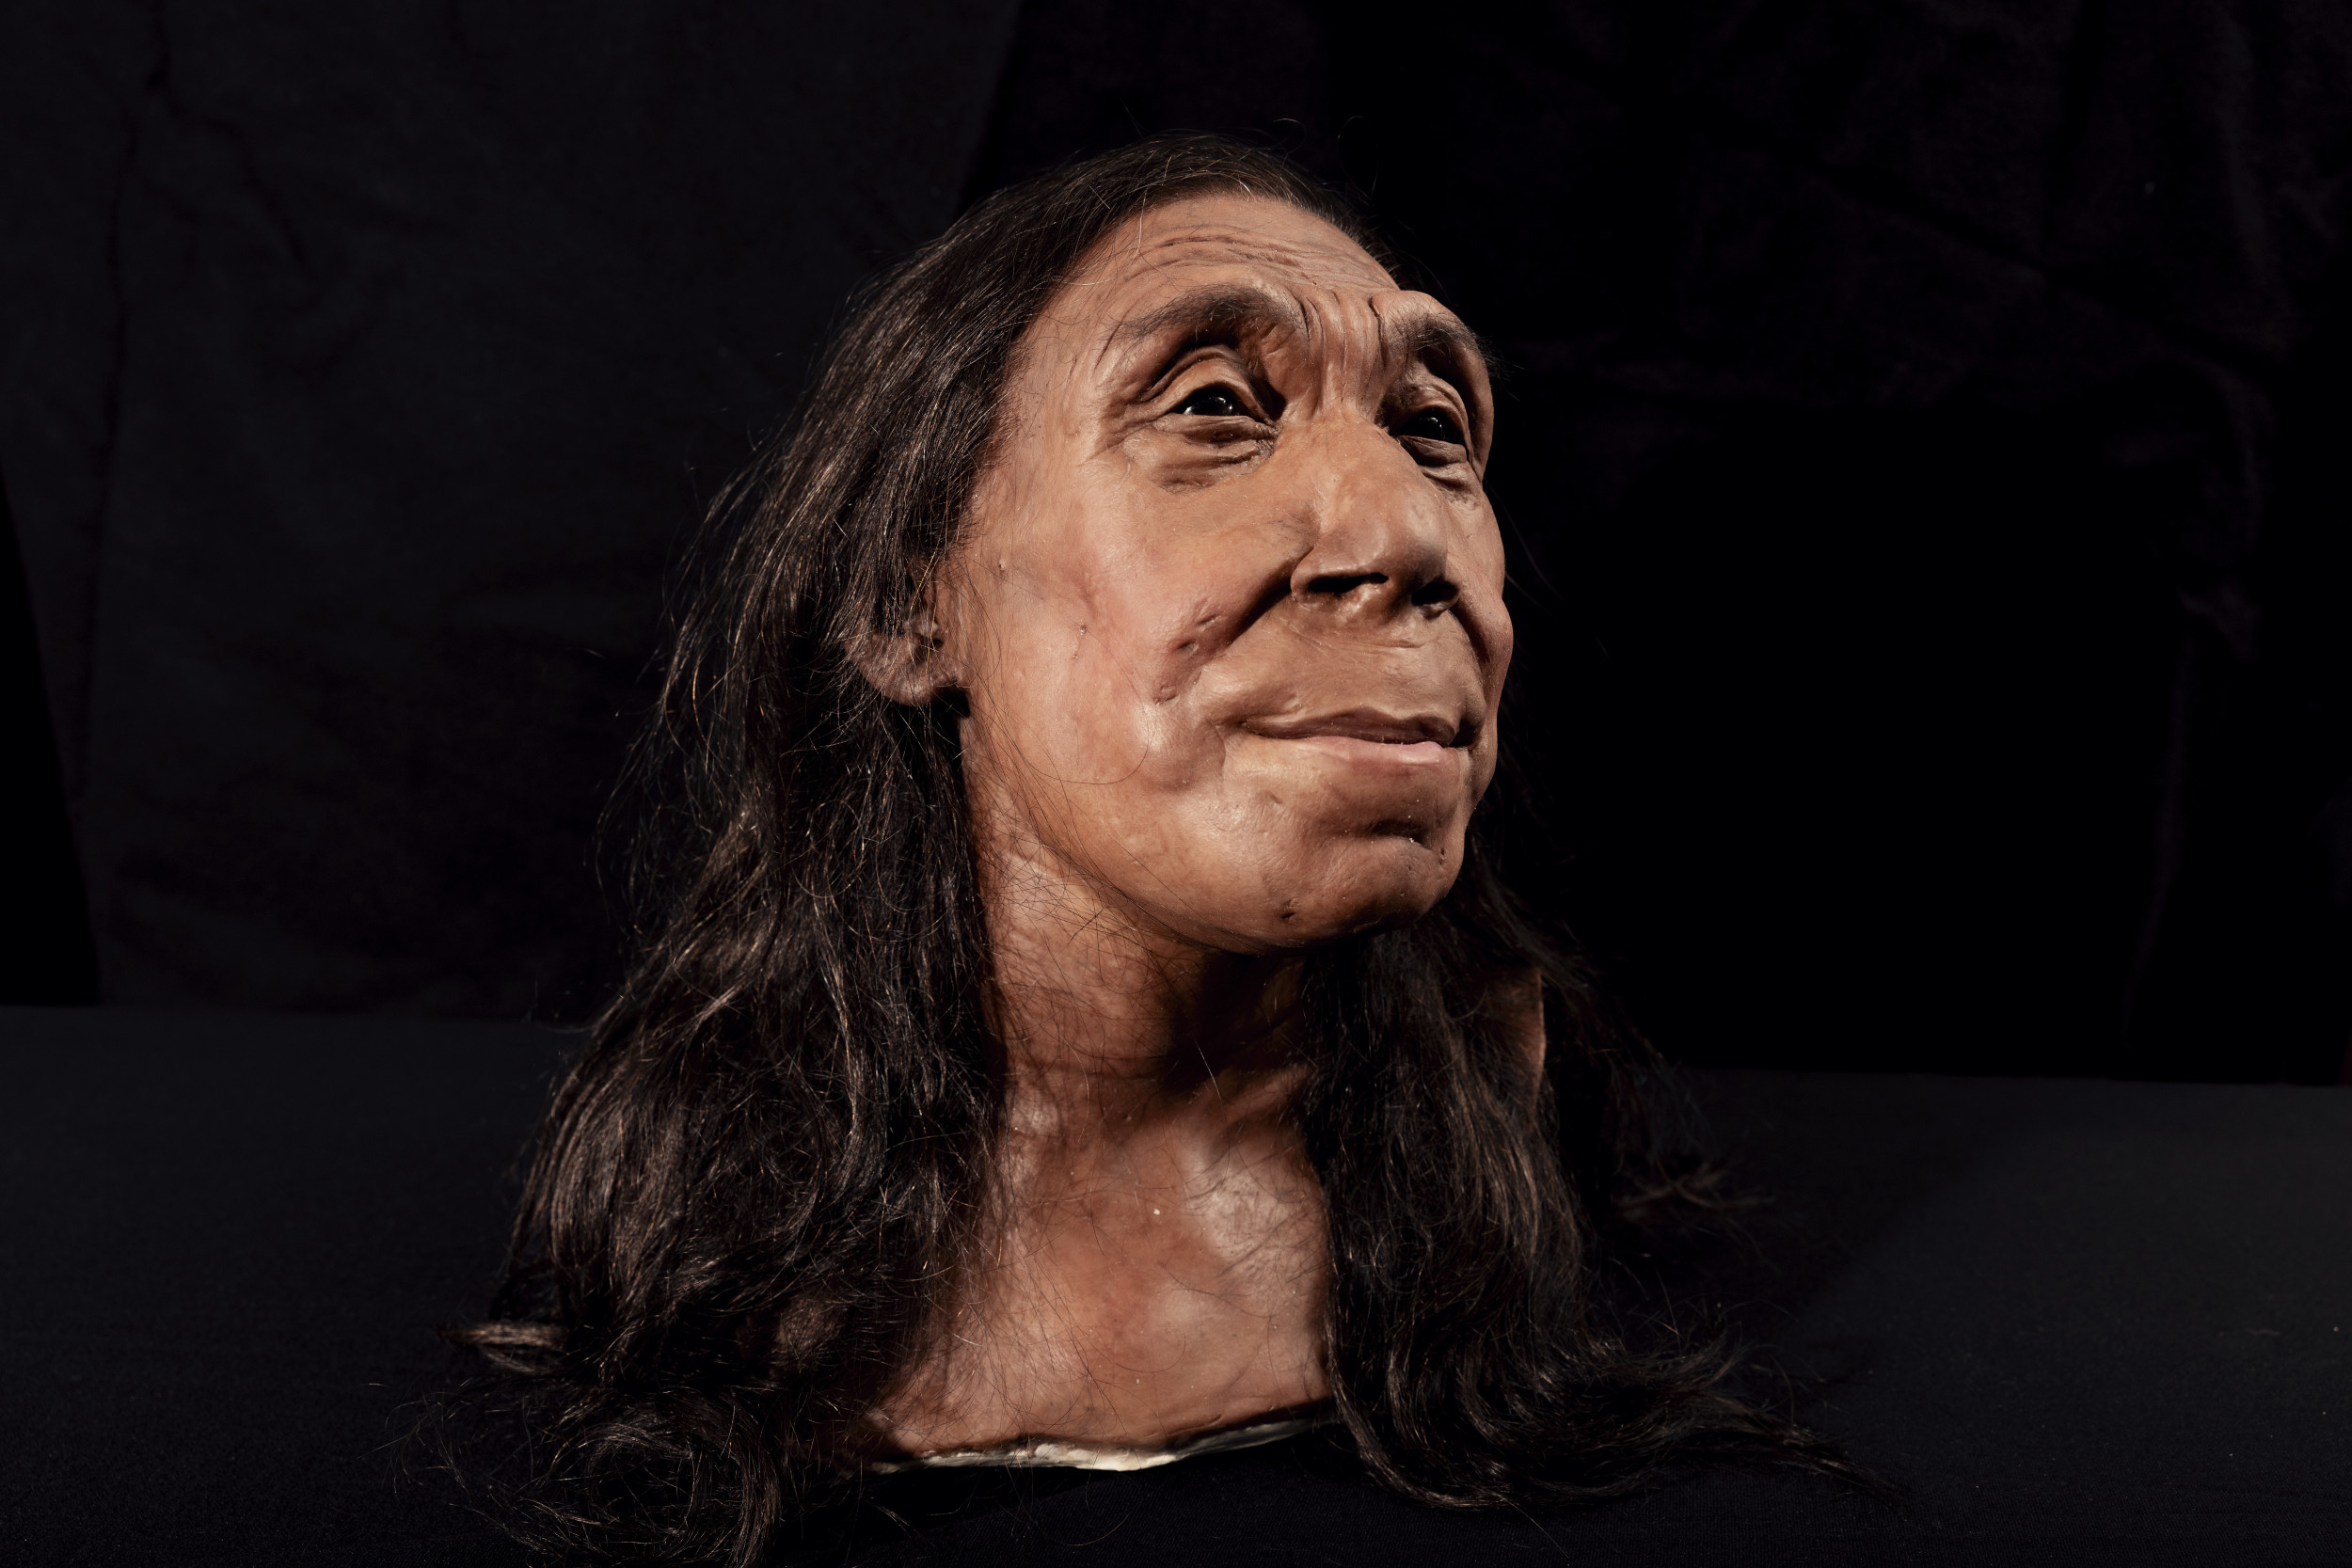 Le visage de la femme de Néandertal révélé 75 000 ans plus tard